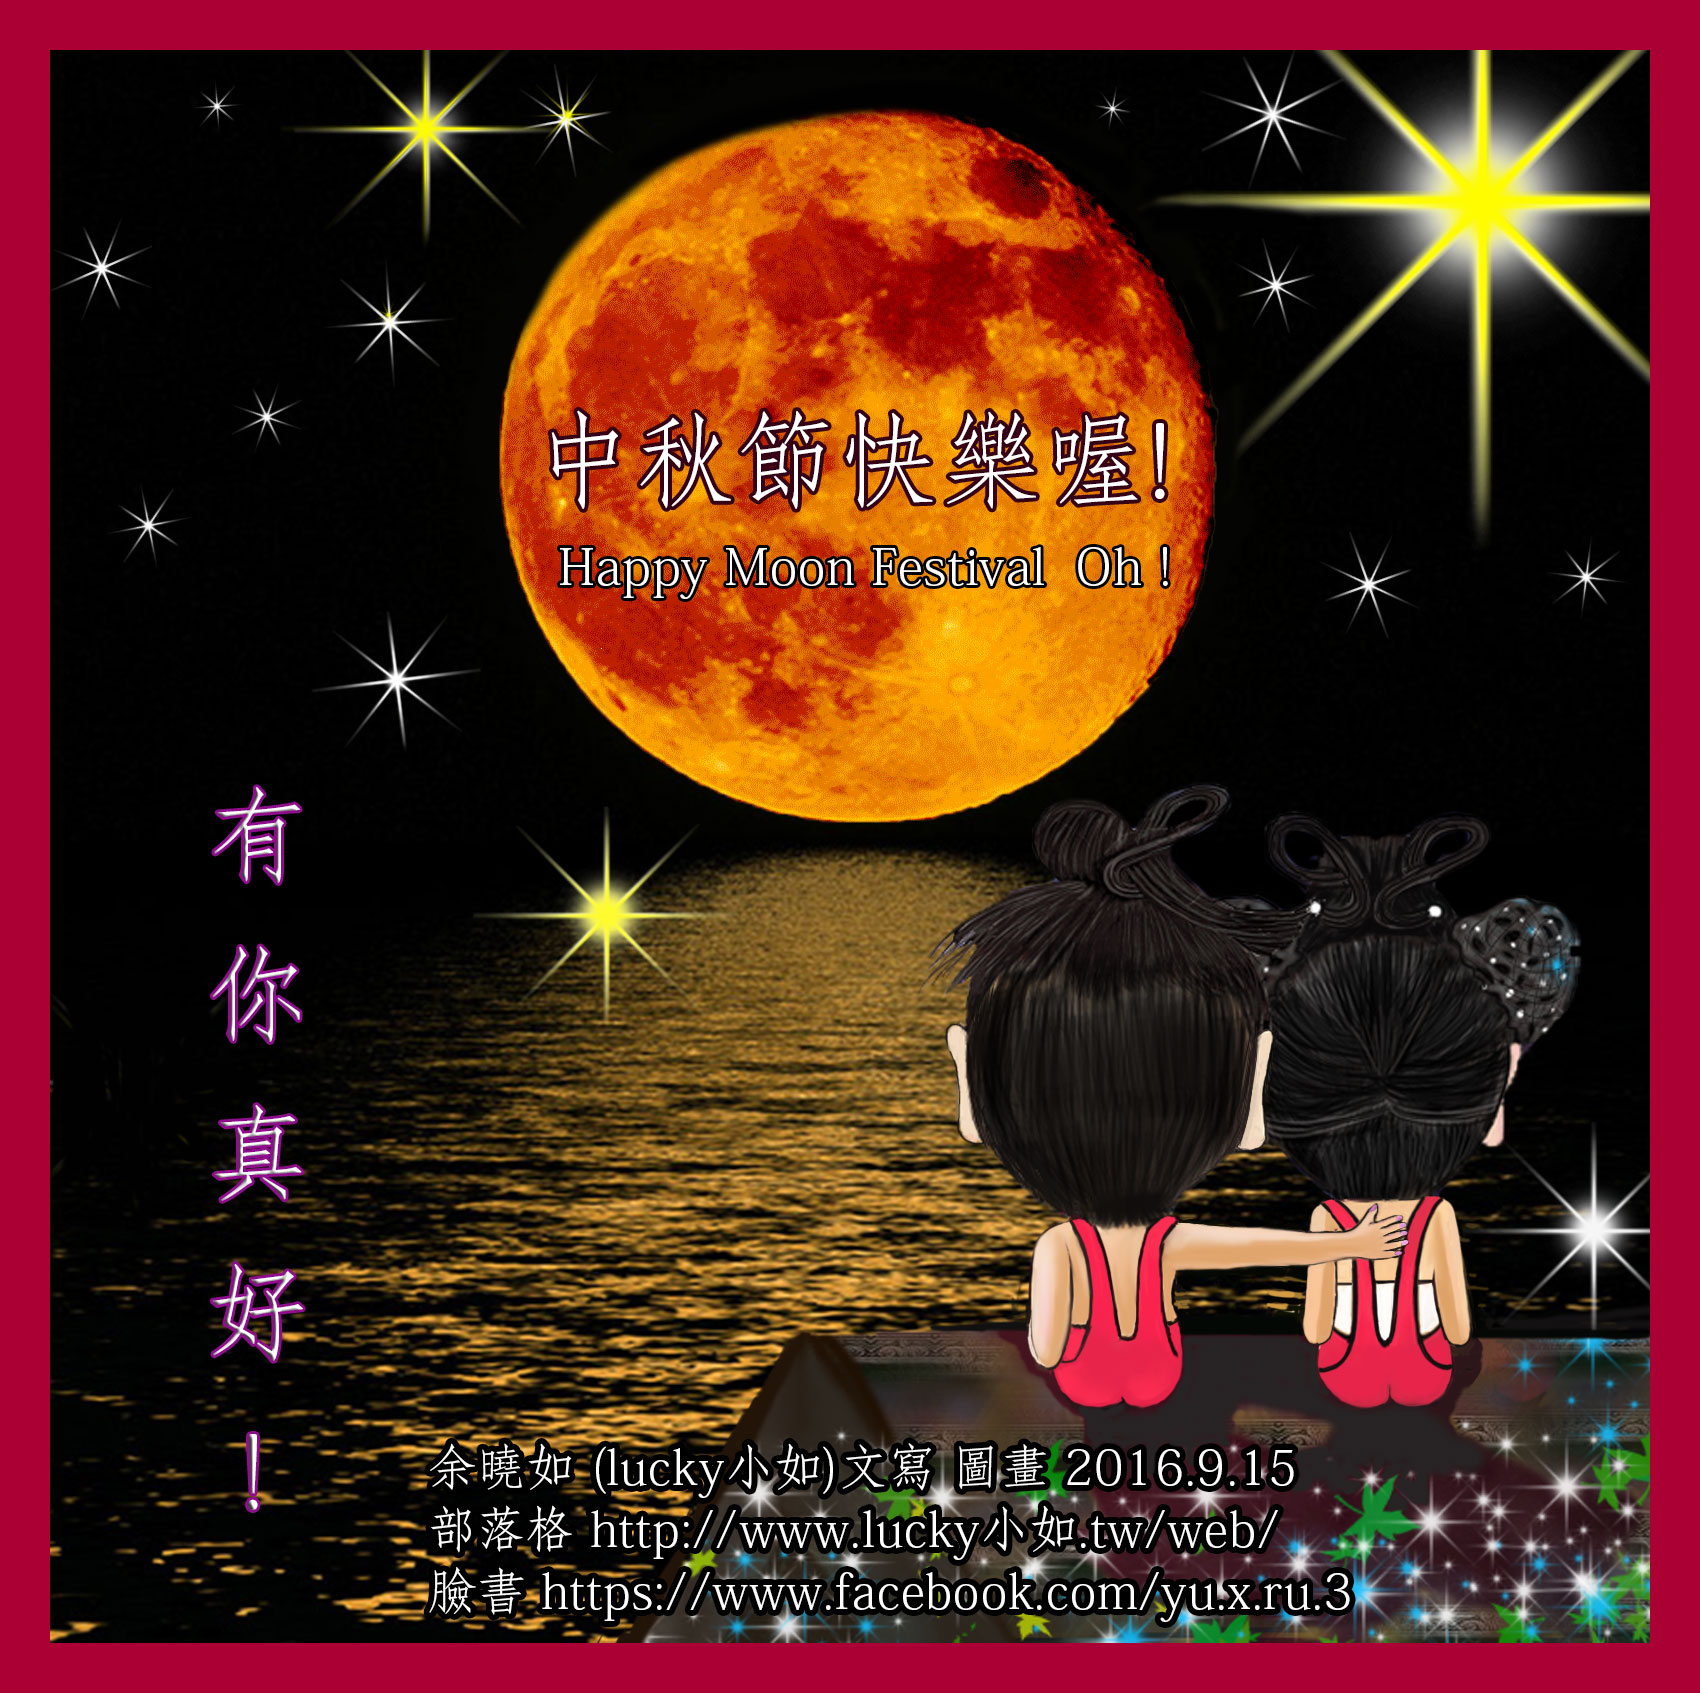 哇! 今晚是中秋節了 ! 祝 大家 中秋節快樂喔! Happy Moon Festival Oh!